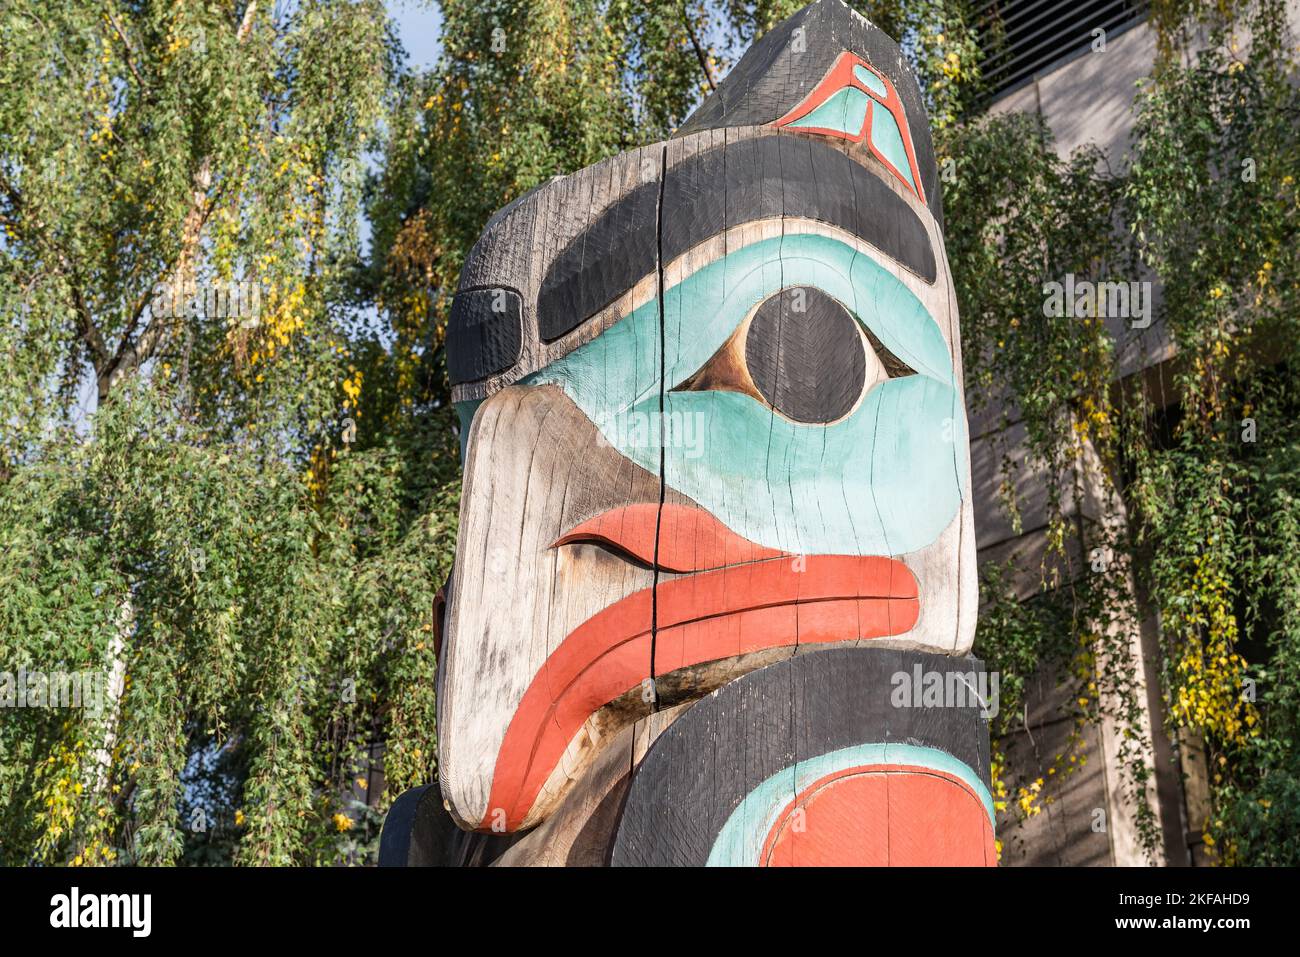 Native Alaskan Totem Pole Figure in Anchorage, Alaska Stock Photo